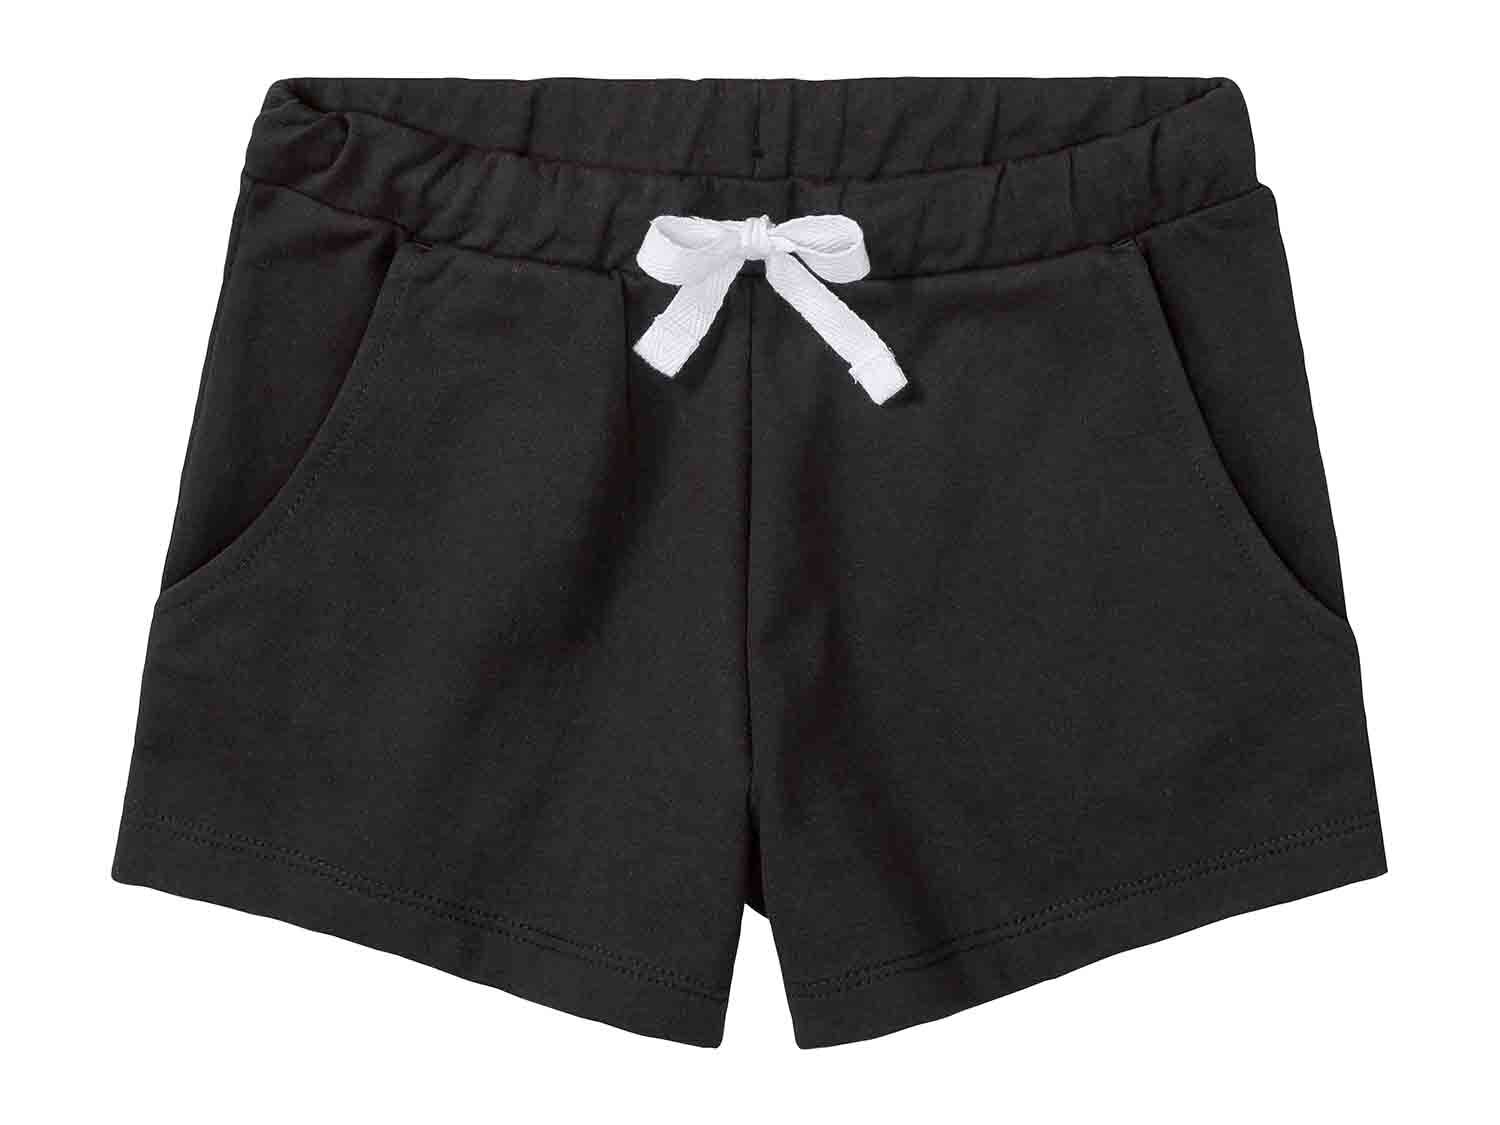 Pantalones cortos júnior pack 2